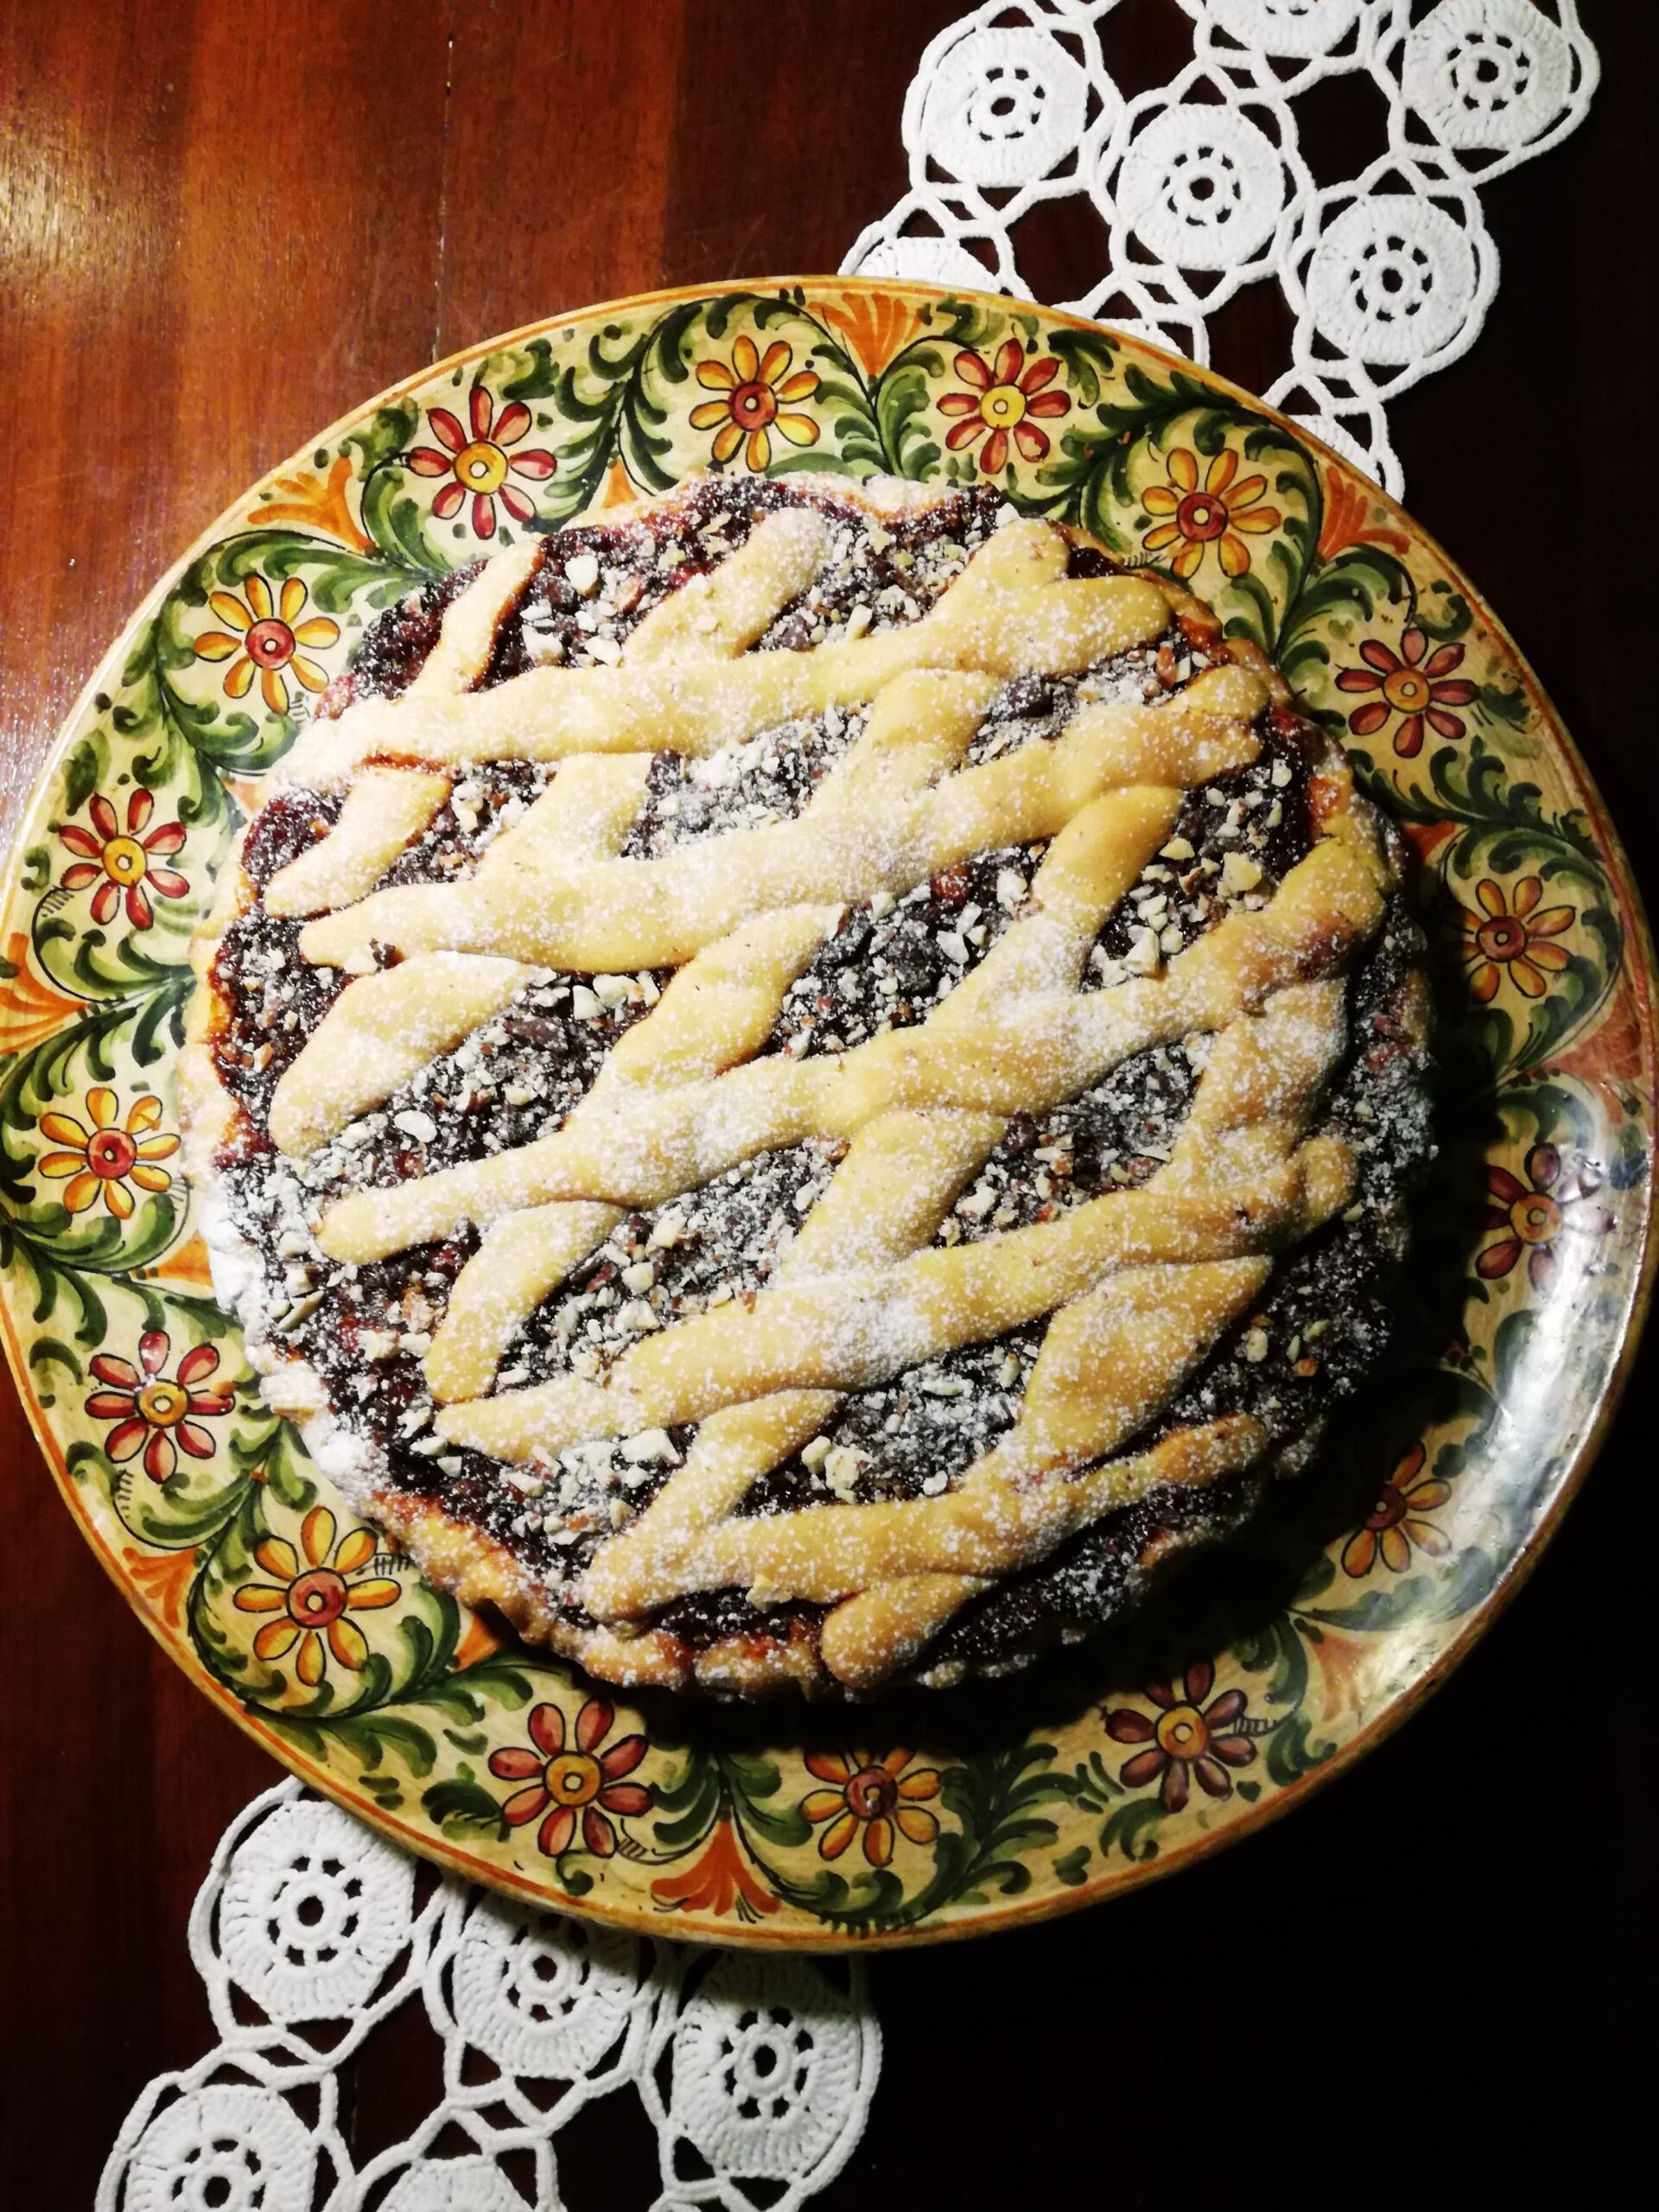 Abruzzo IN …cucina. La Prof. e la sua ricetta autunnale: “Crostata di fichi, mandorle e cioccolata”